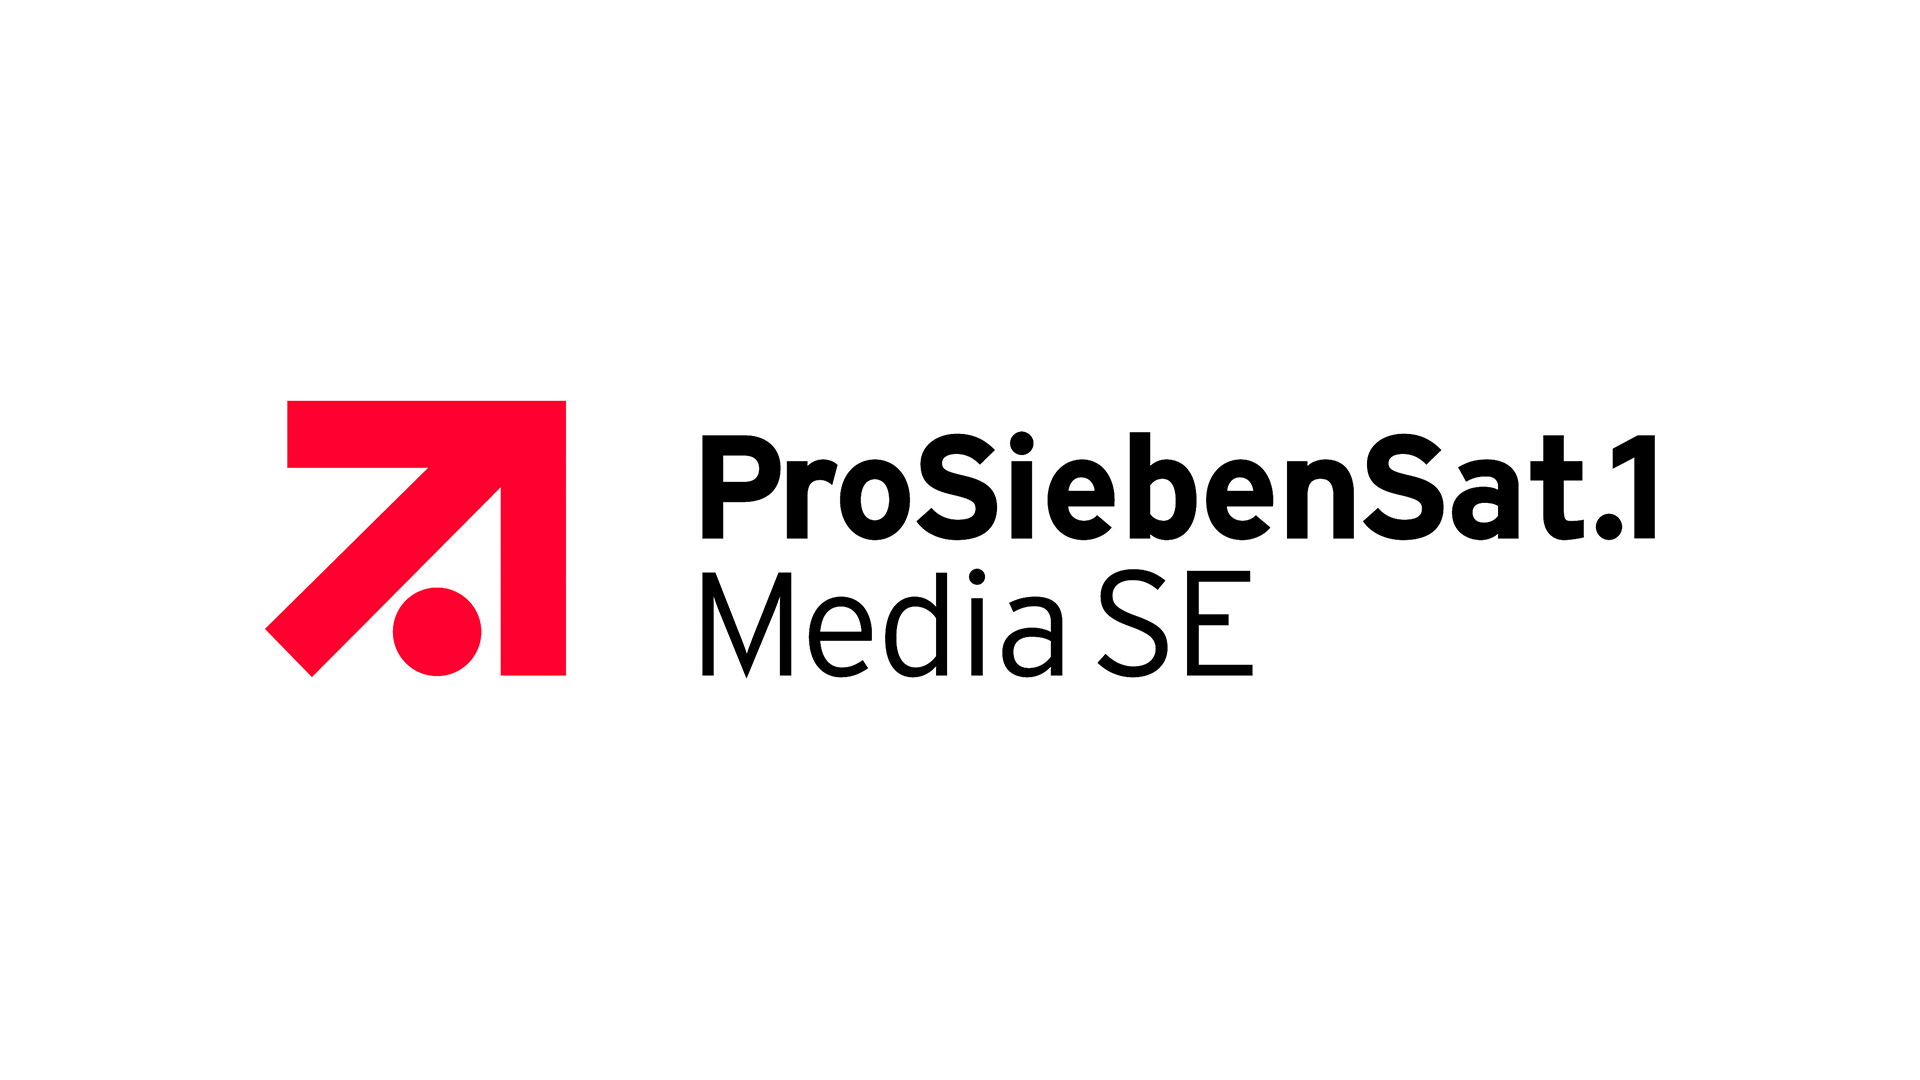 mediaset-takes-a-stake-in-prosieben-tvbeurope